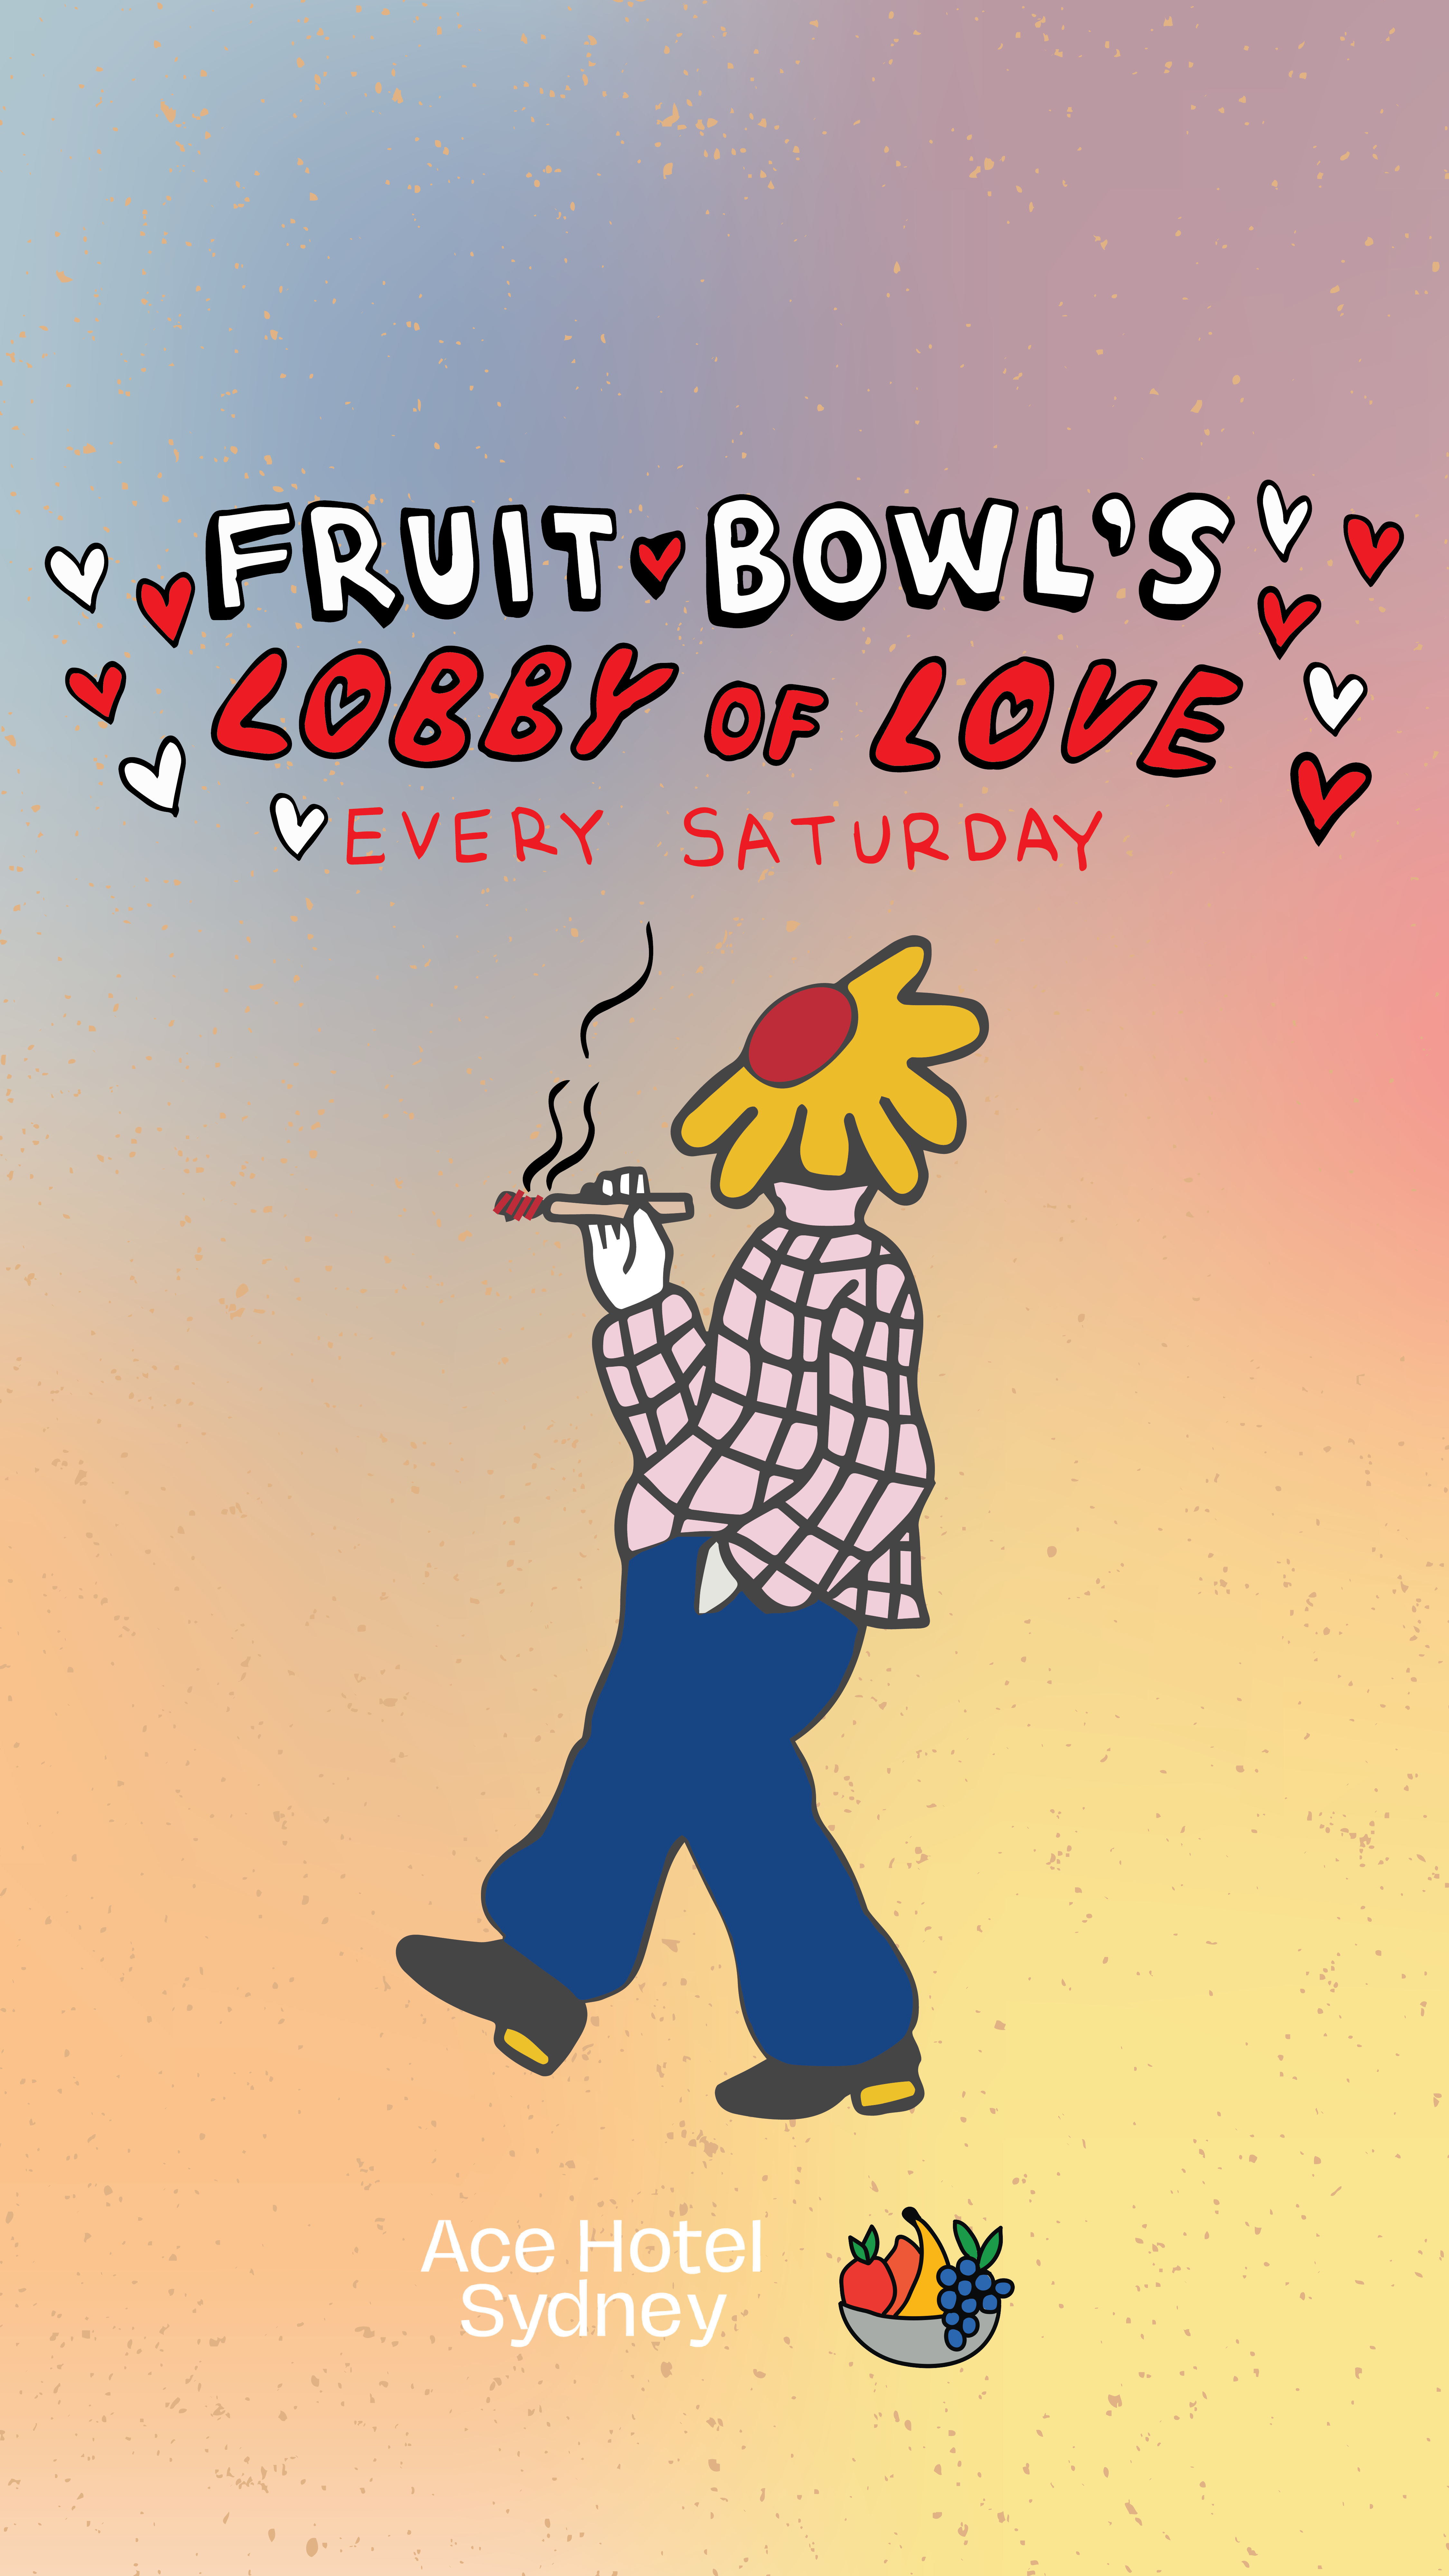 Fruit bowl's lobby of love poster